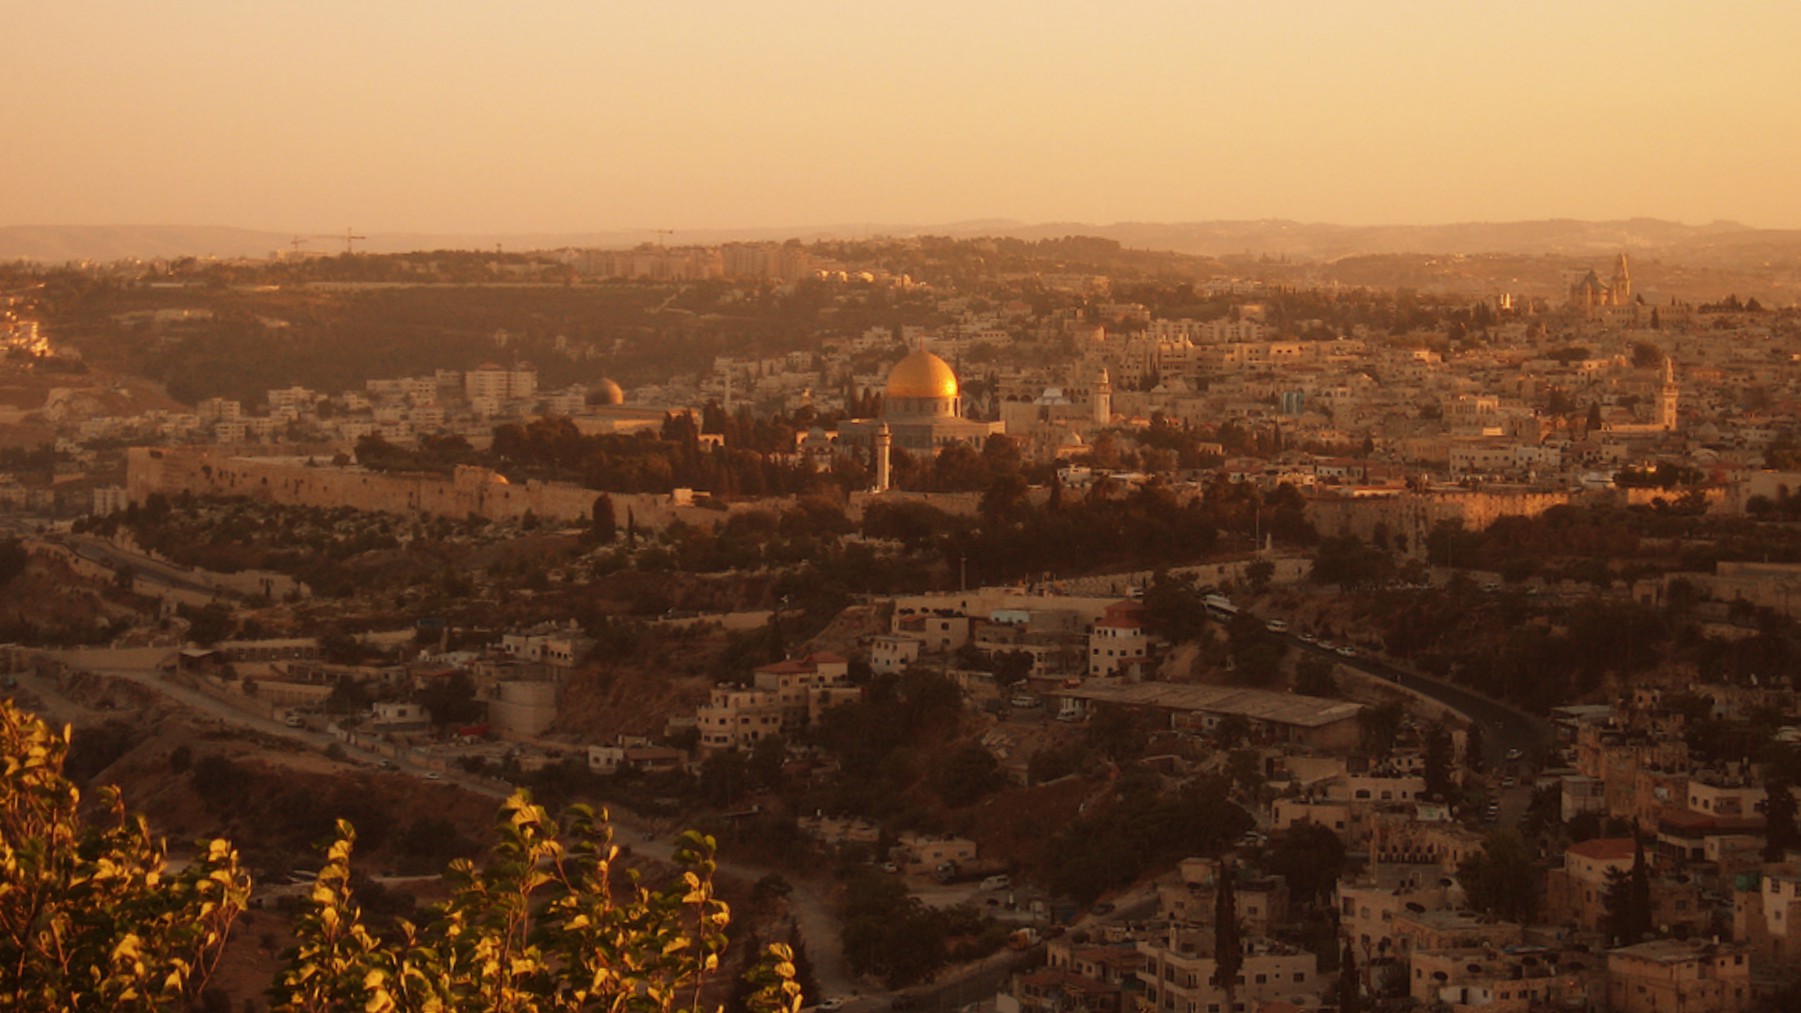 Le roi de Jordanie est considéré comme le "protecteur des lieux saints" de Jérusalem (Photo:David Poe/Flickr/CC BY-ND 2.0)